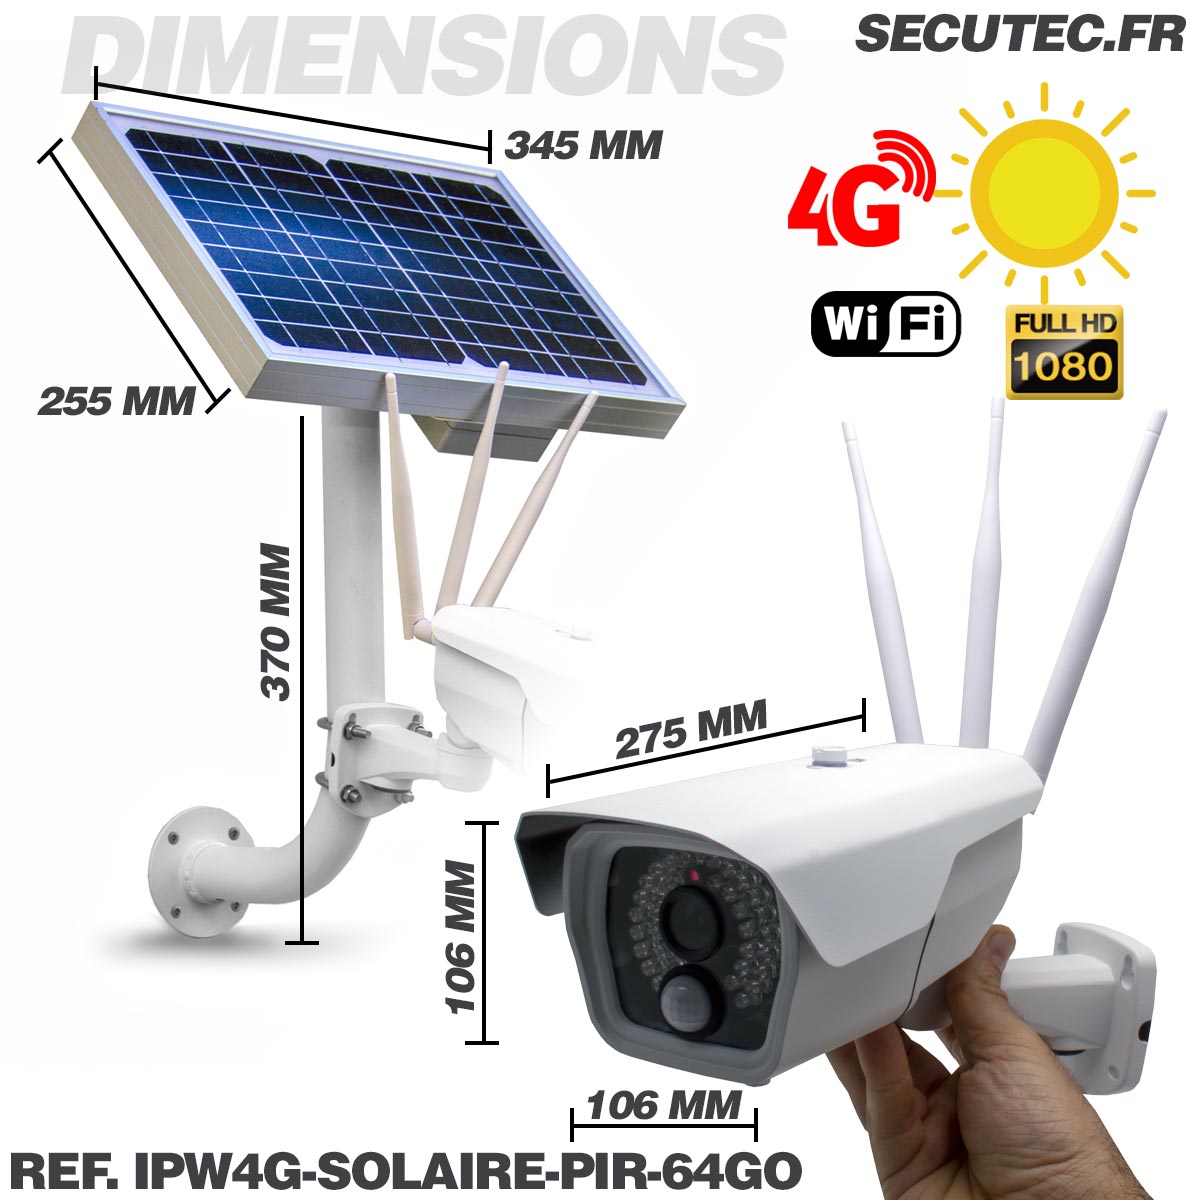 IPW4G-SOLAIRE-PIR-64GO - Camera autonome solaire connexion 4G ou